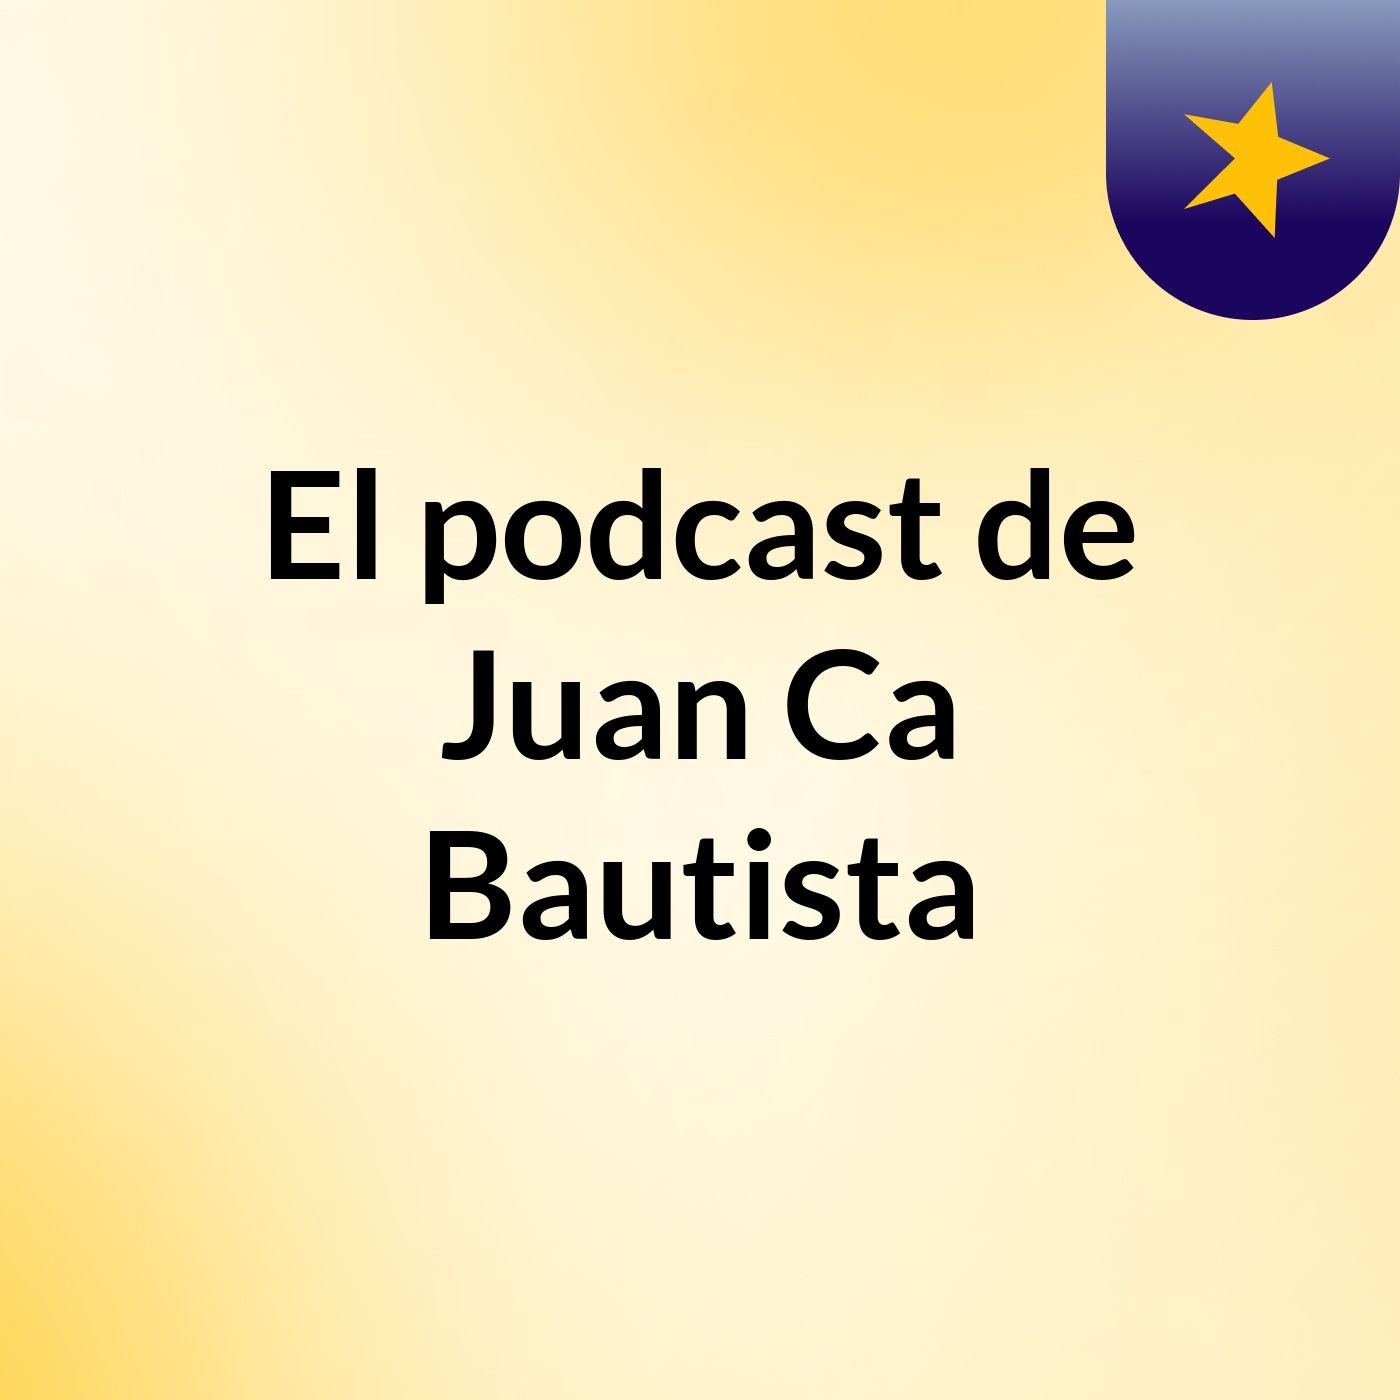 El podcast de Juan Ca Bautista